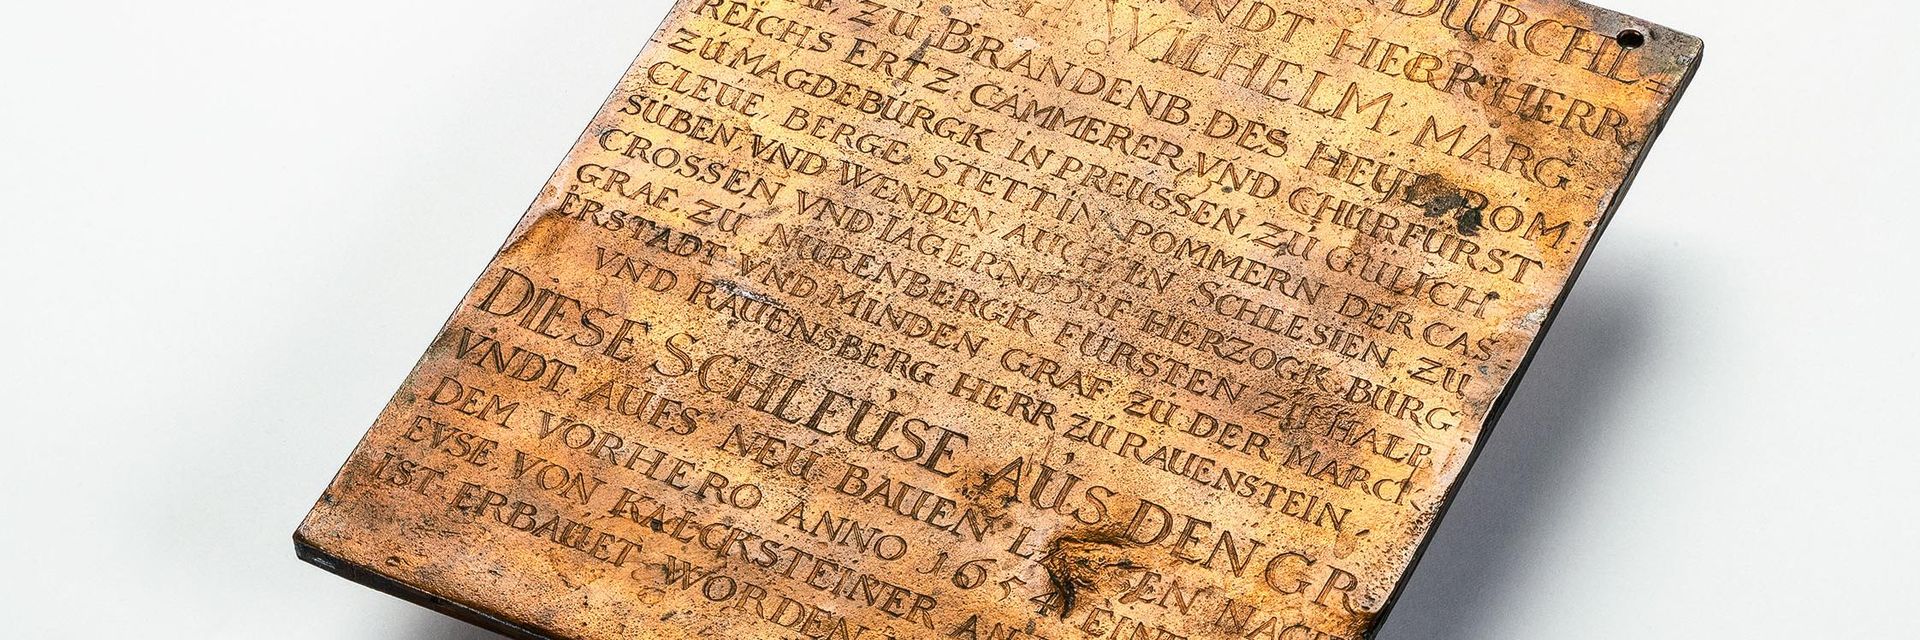 Die Tafel aus Kupfer hat etwa die Maße und das Gewicht eines kleinen Tabletcomputers. In der gewellten und mit Furchen überzogenen Oberfläche ist ein Text eingraviert, der in frühem Neuhochdeutsch vom Bau der Berliner Schleuse im Jahr 1657 berichtet.